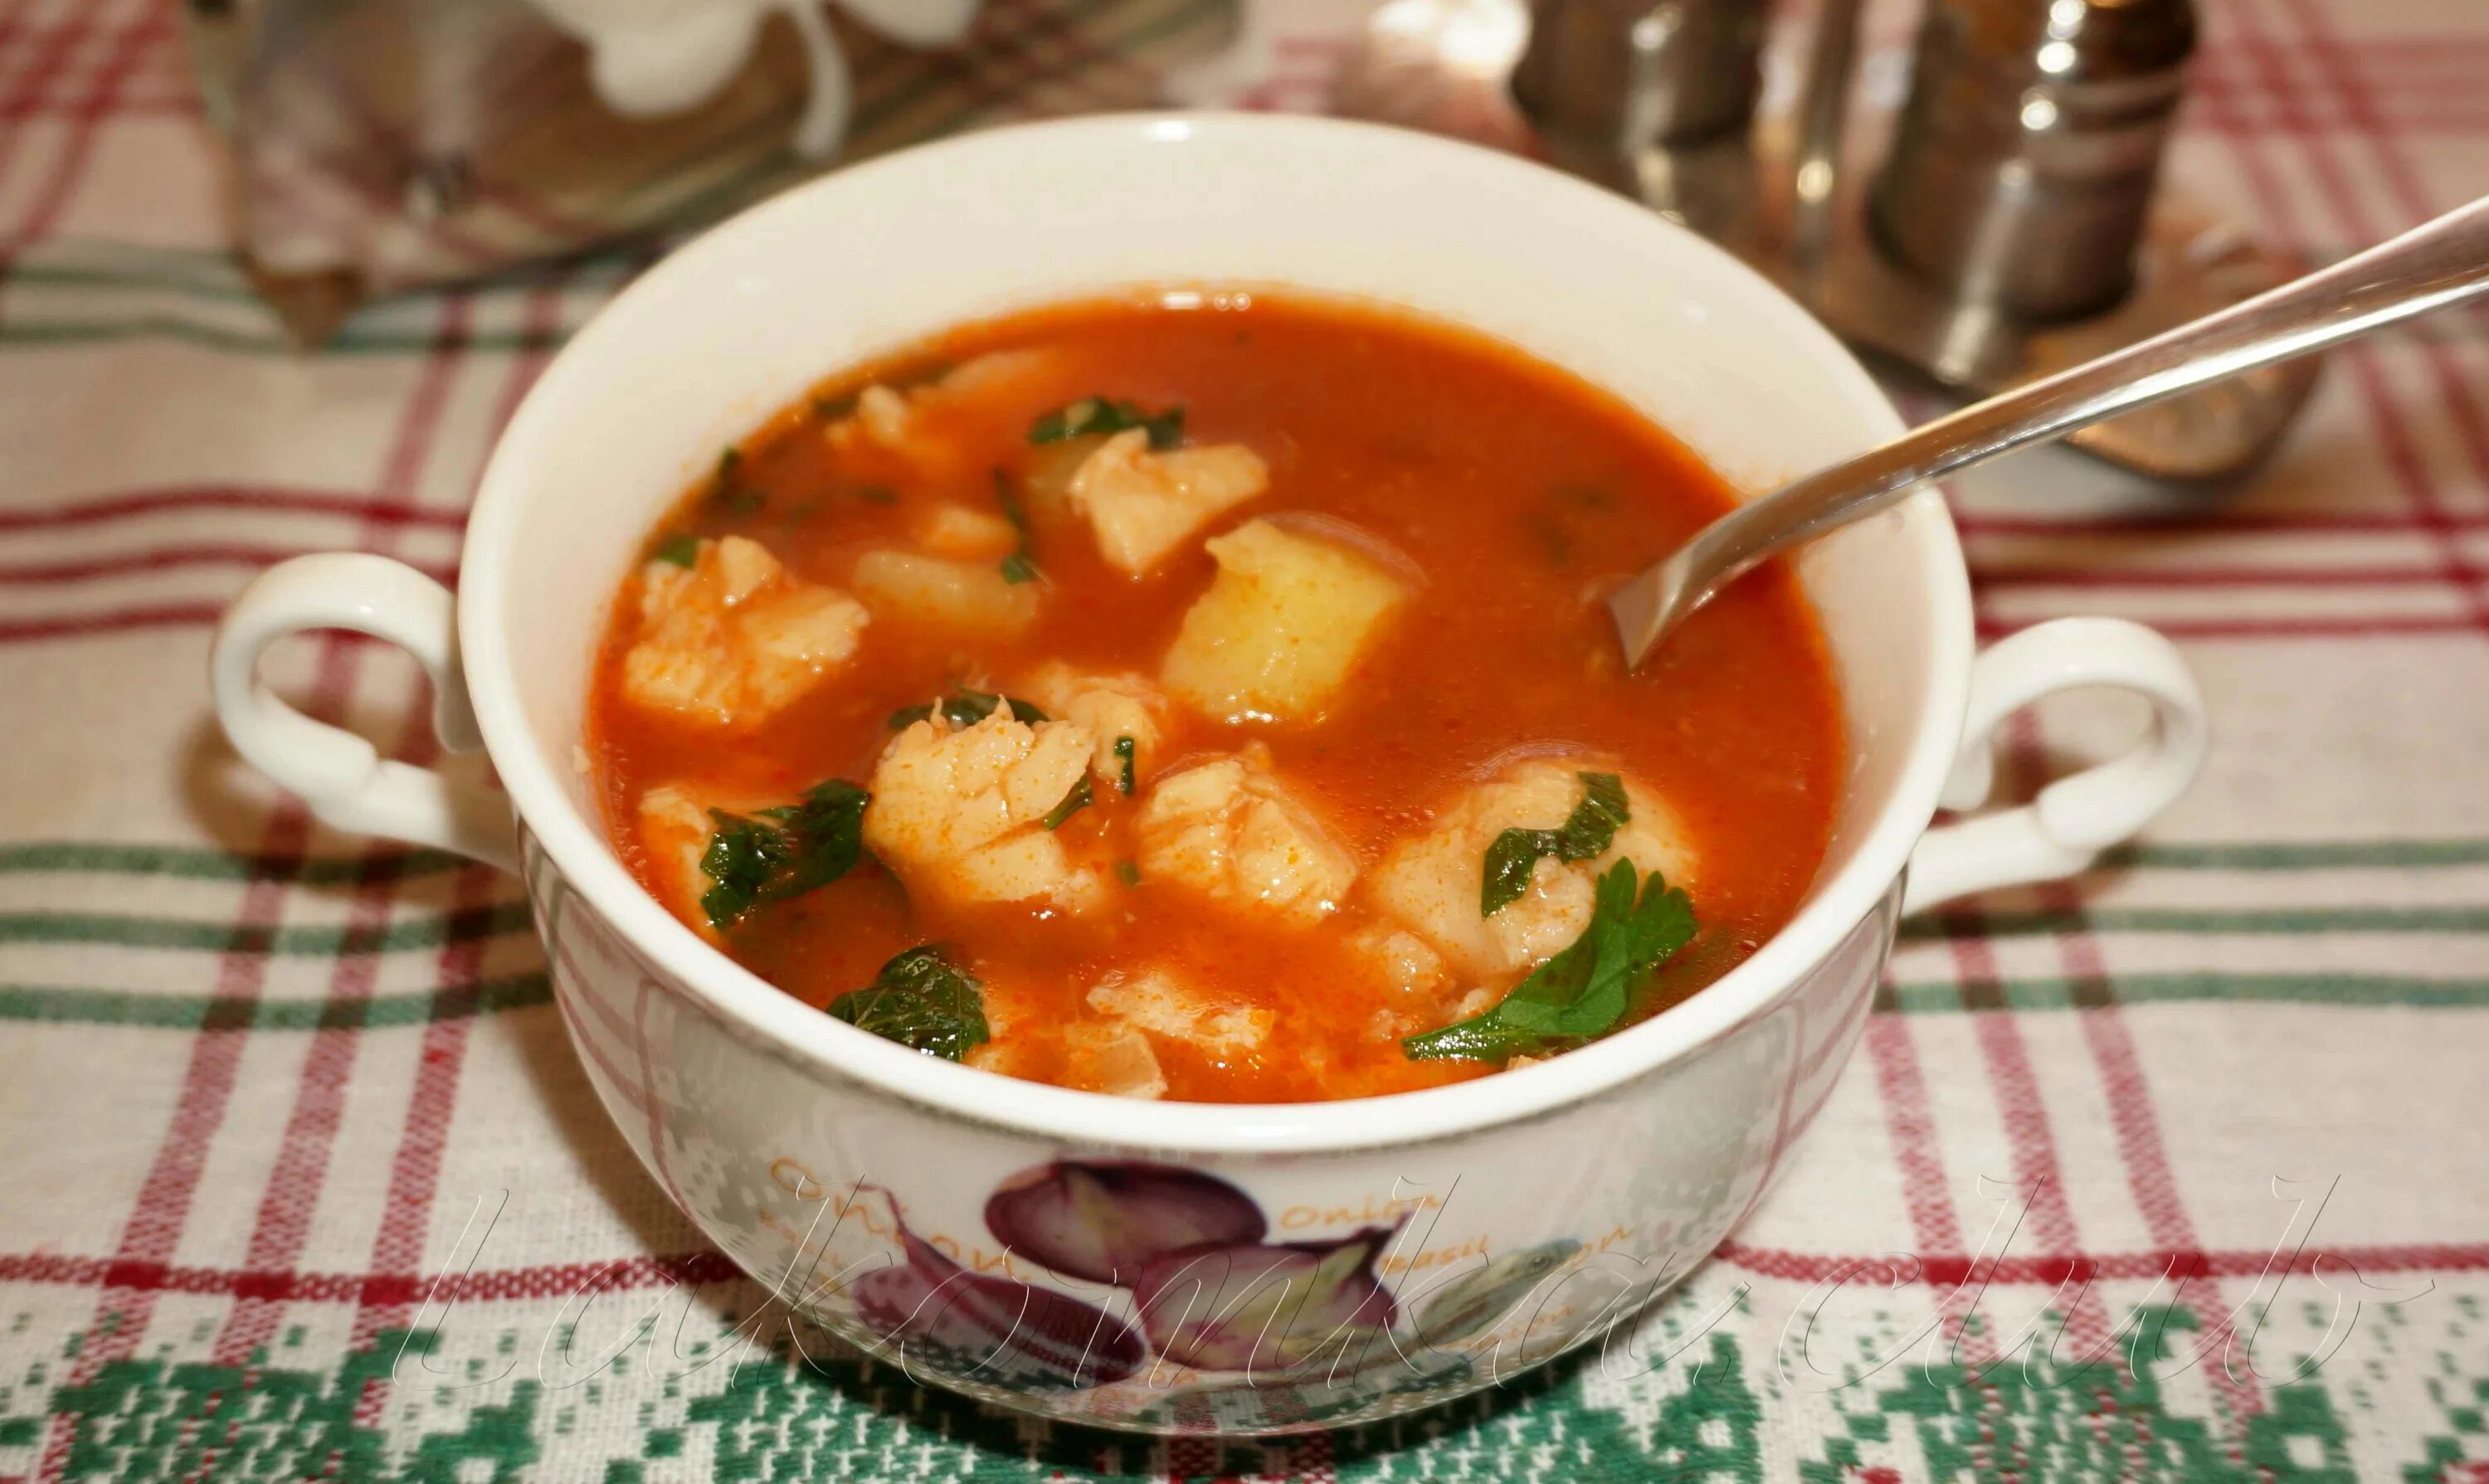 Суп с килькой. Томатный суп с рыбой. Окрошка с килькой в томатном соусе. Рыбный суп из консервов с рыбой в томатном соусе. Рыбный суп из консервы кильки